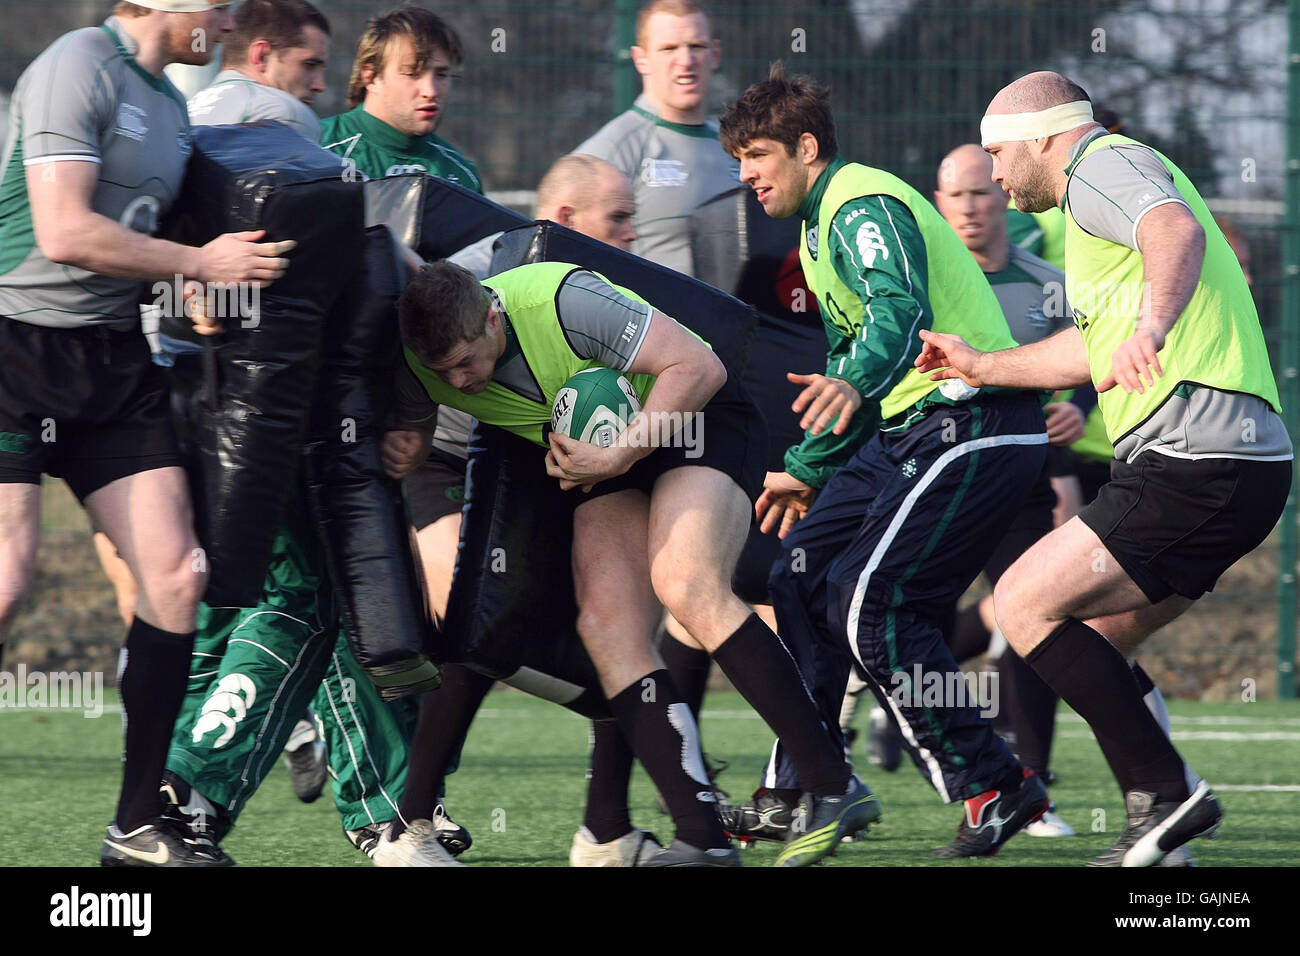 Rugby Union - Irland Trainingseinheit - UCD. Irische Spieler während einer Trainingseinheit bei der UCD in Dublin. Stockfoto